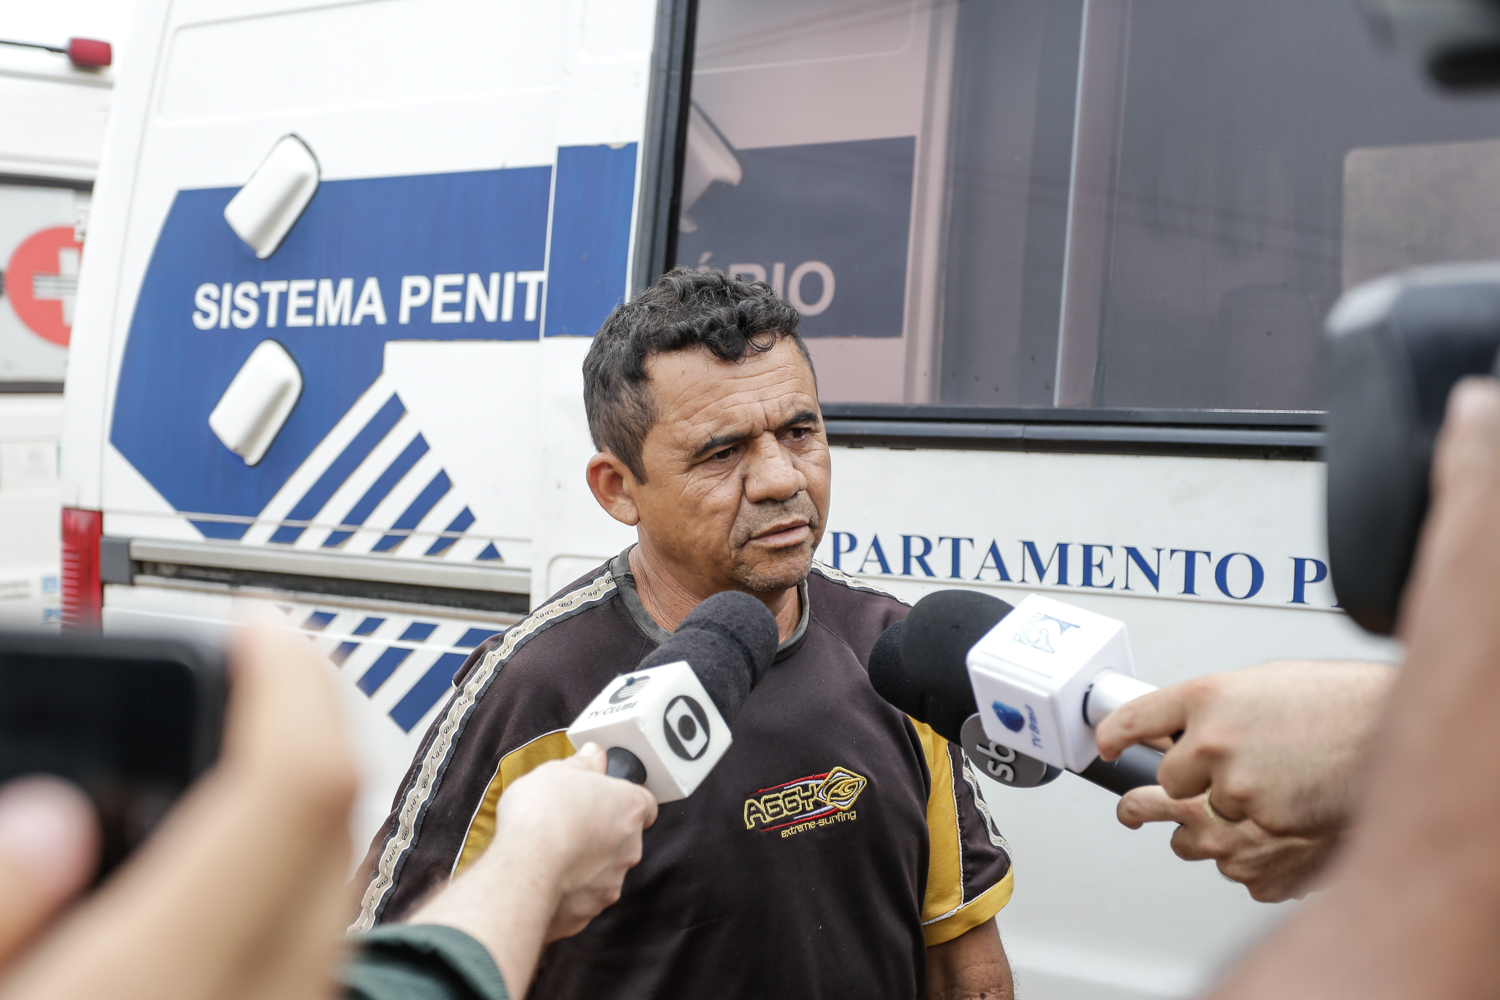 Antonio Pereira Gomes, foi atingido por uma bala de borracha